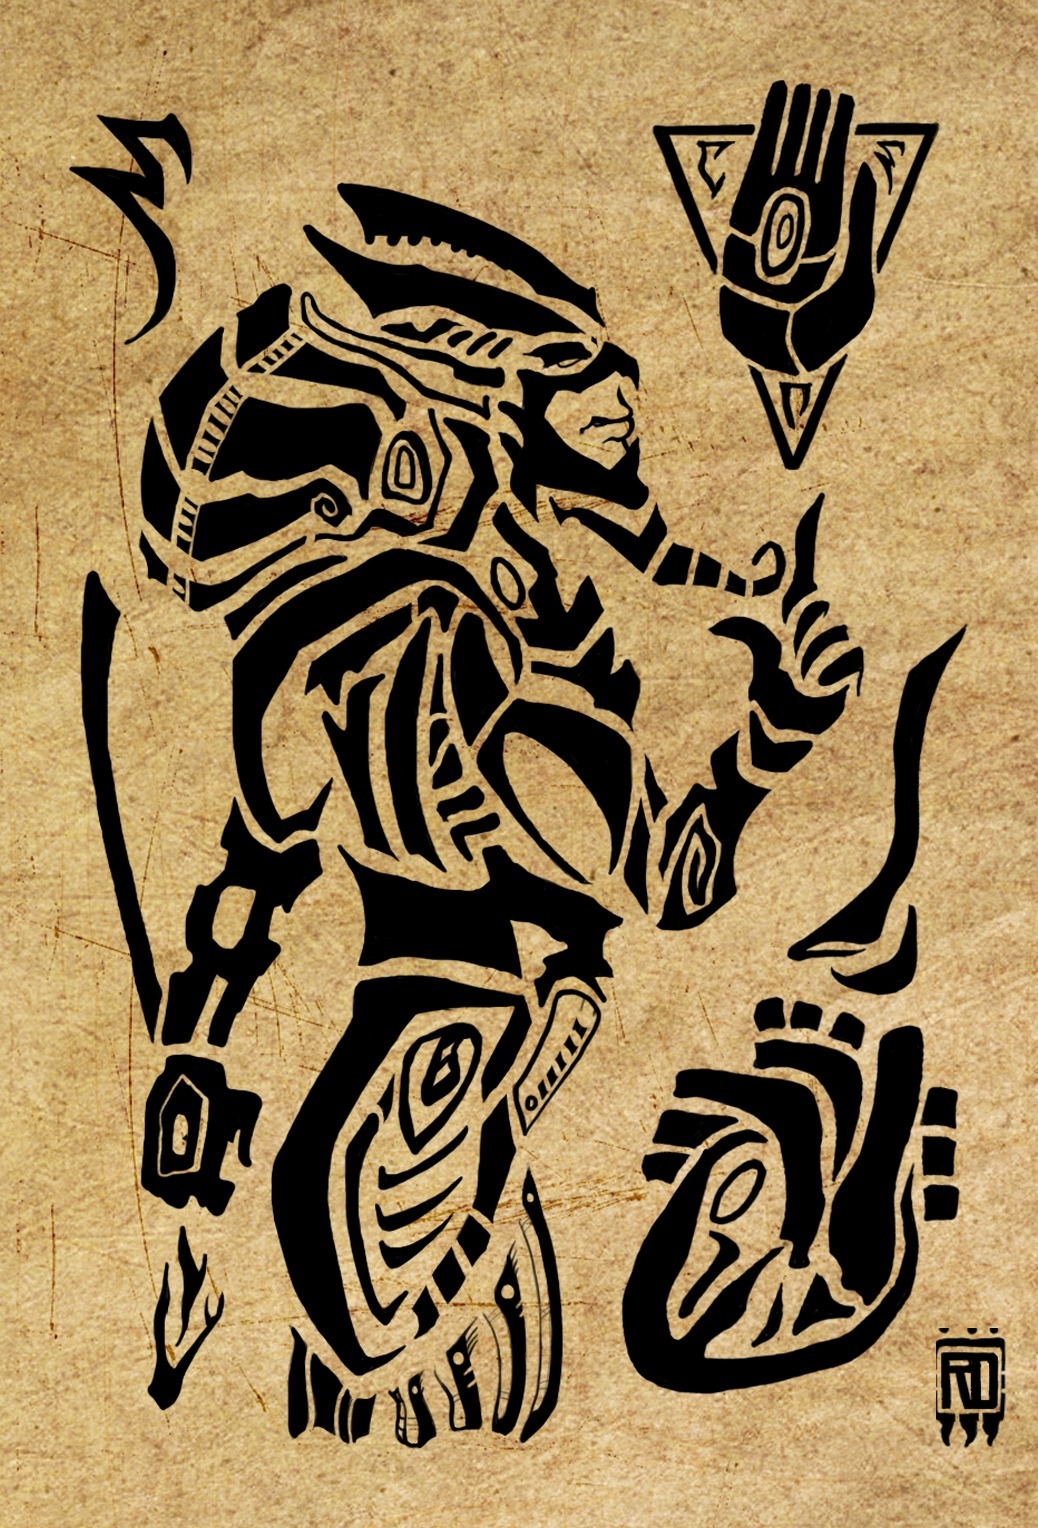 Sotha Sil - The Elder Scrolls Online fan art by Relan Daevath